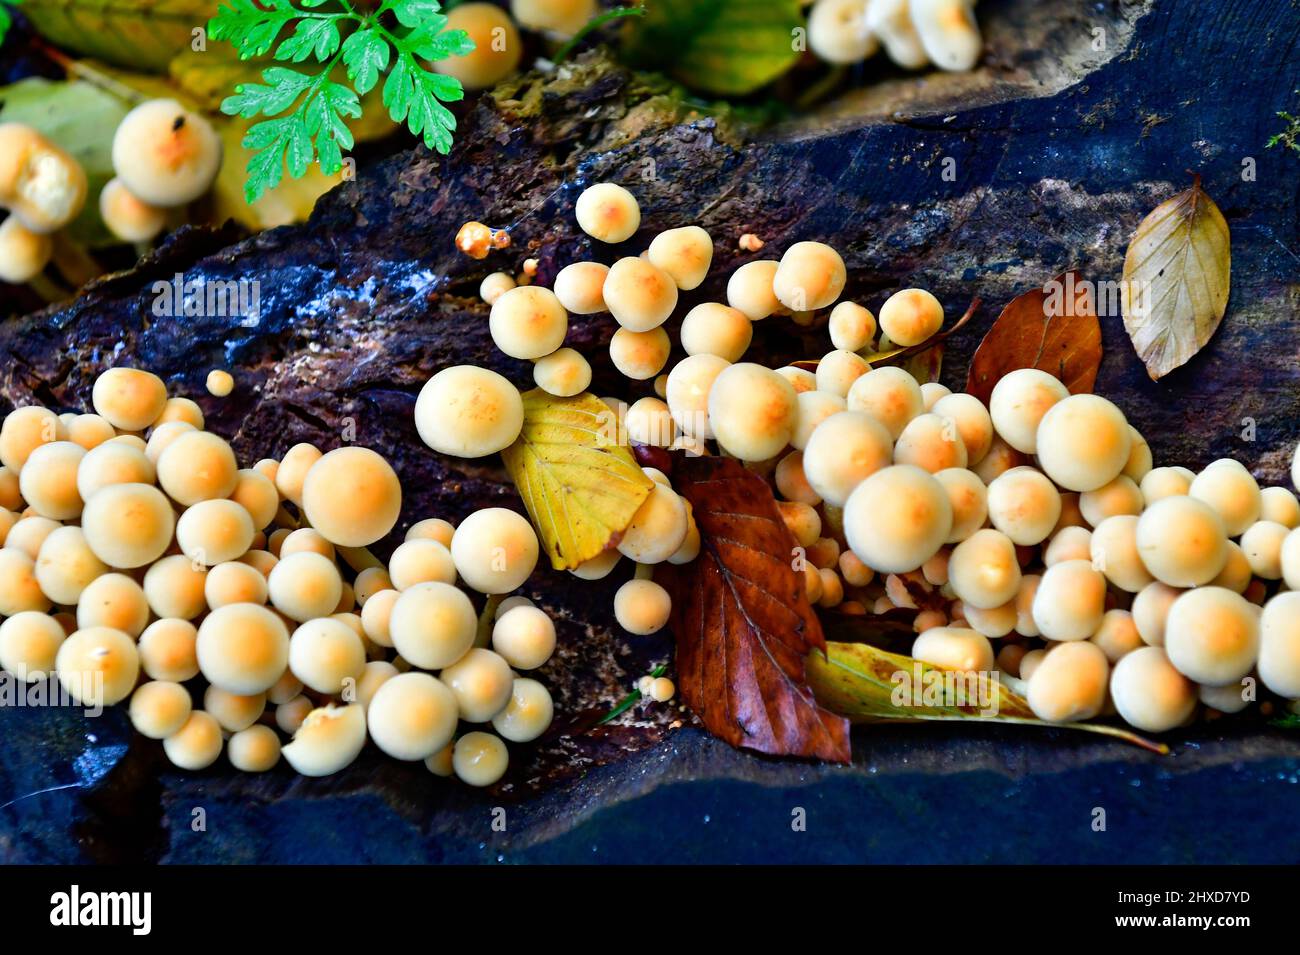 Mushrooms on a tree stump, Lüneburg, Germany Stock Photo